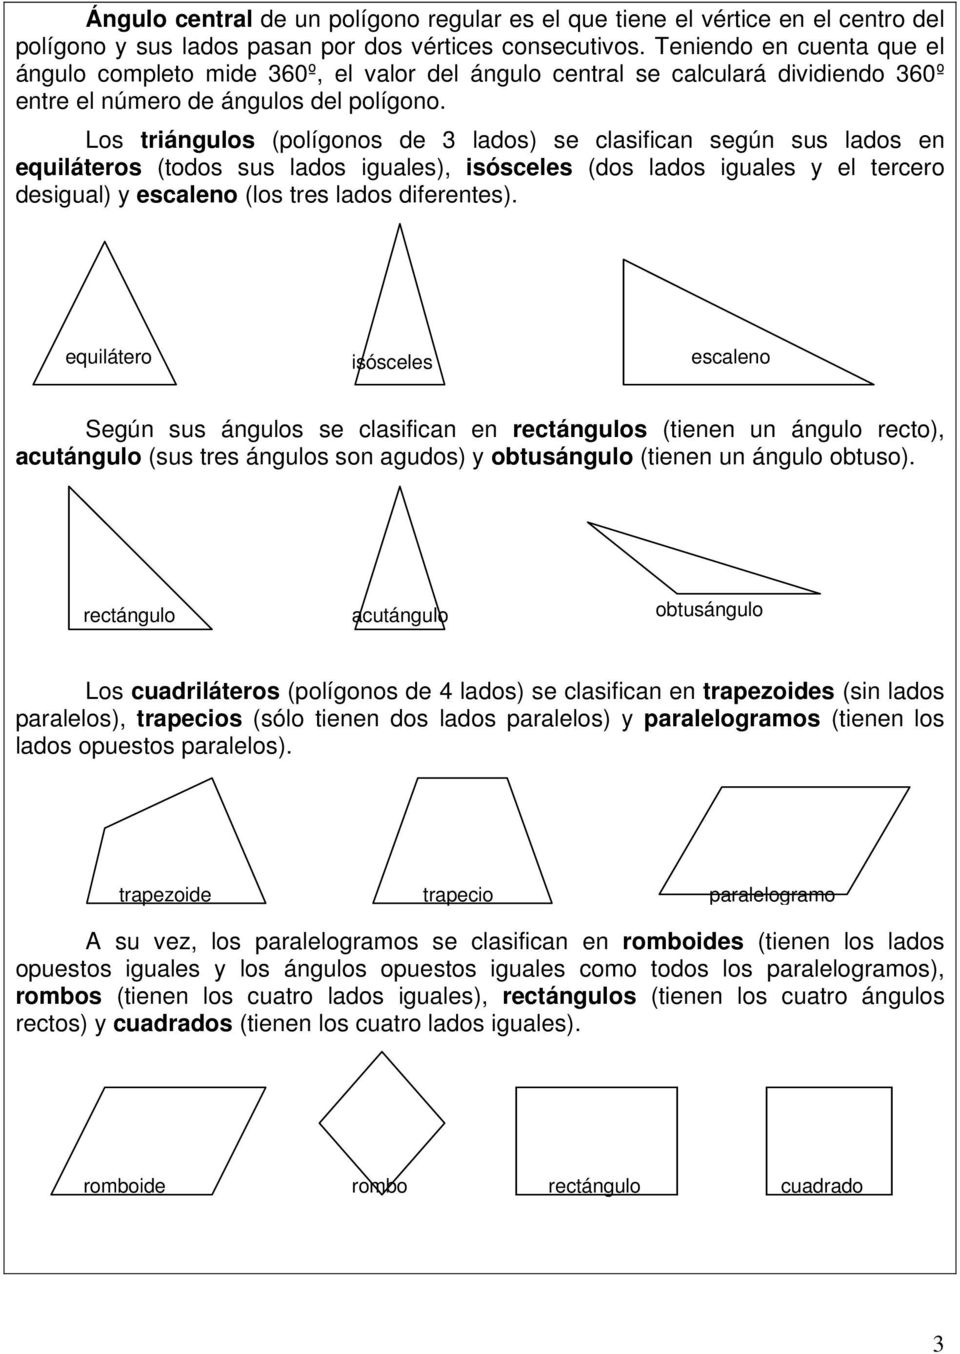 Los triángulos (polígonos de 3 lados) se clasifican según sus lados en equiláteros (todos sus lados iguales), isósceles (dos lados iguales y el tercero desigual) y escaleno (los tres lados